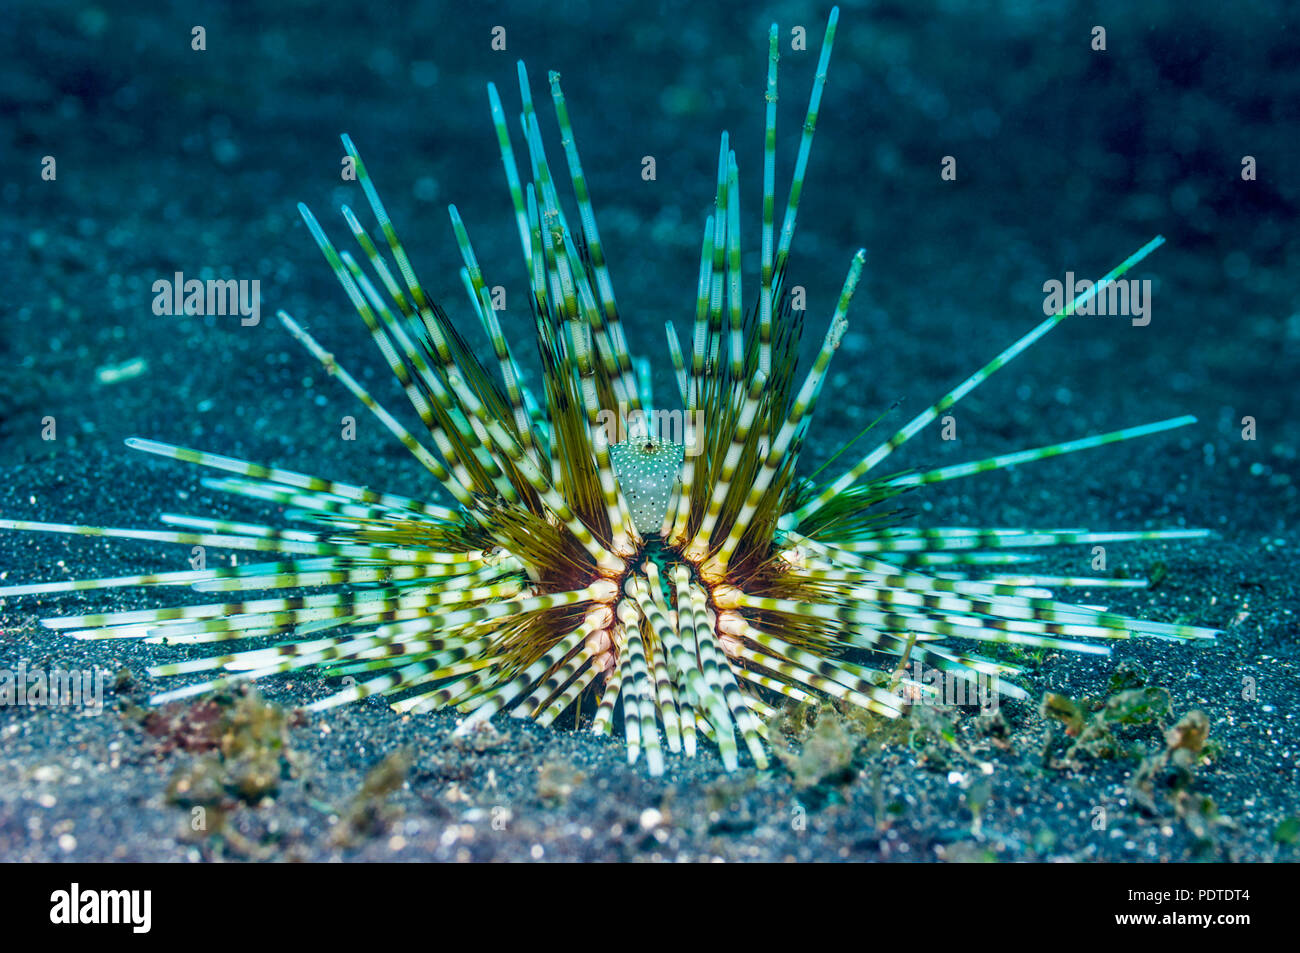 Urchin - Echinothrix calamaris.  Indonesia. Stock Photo